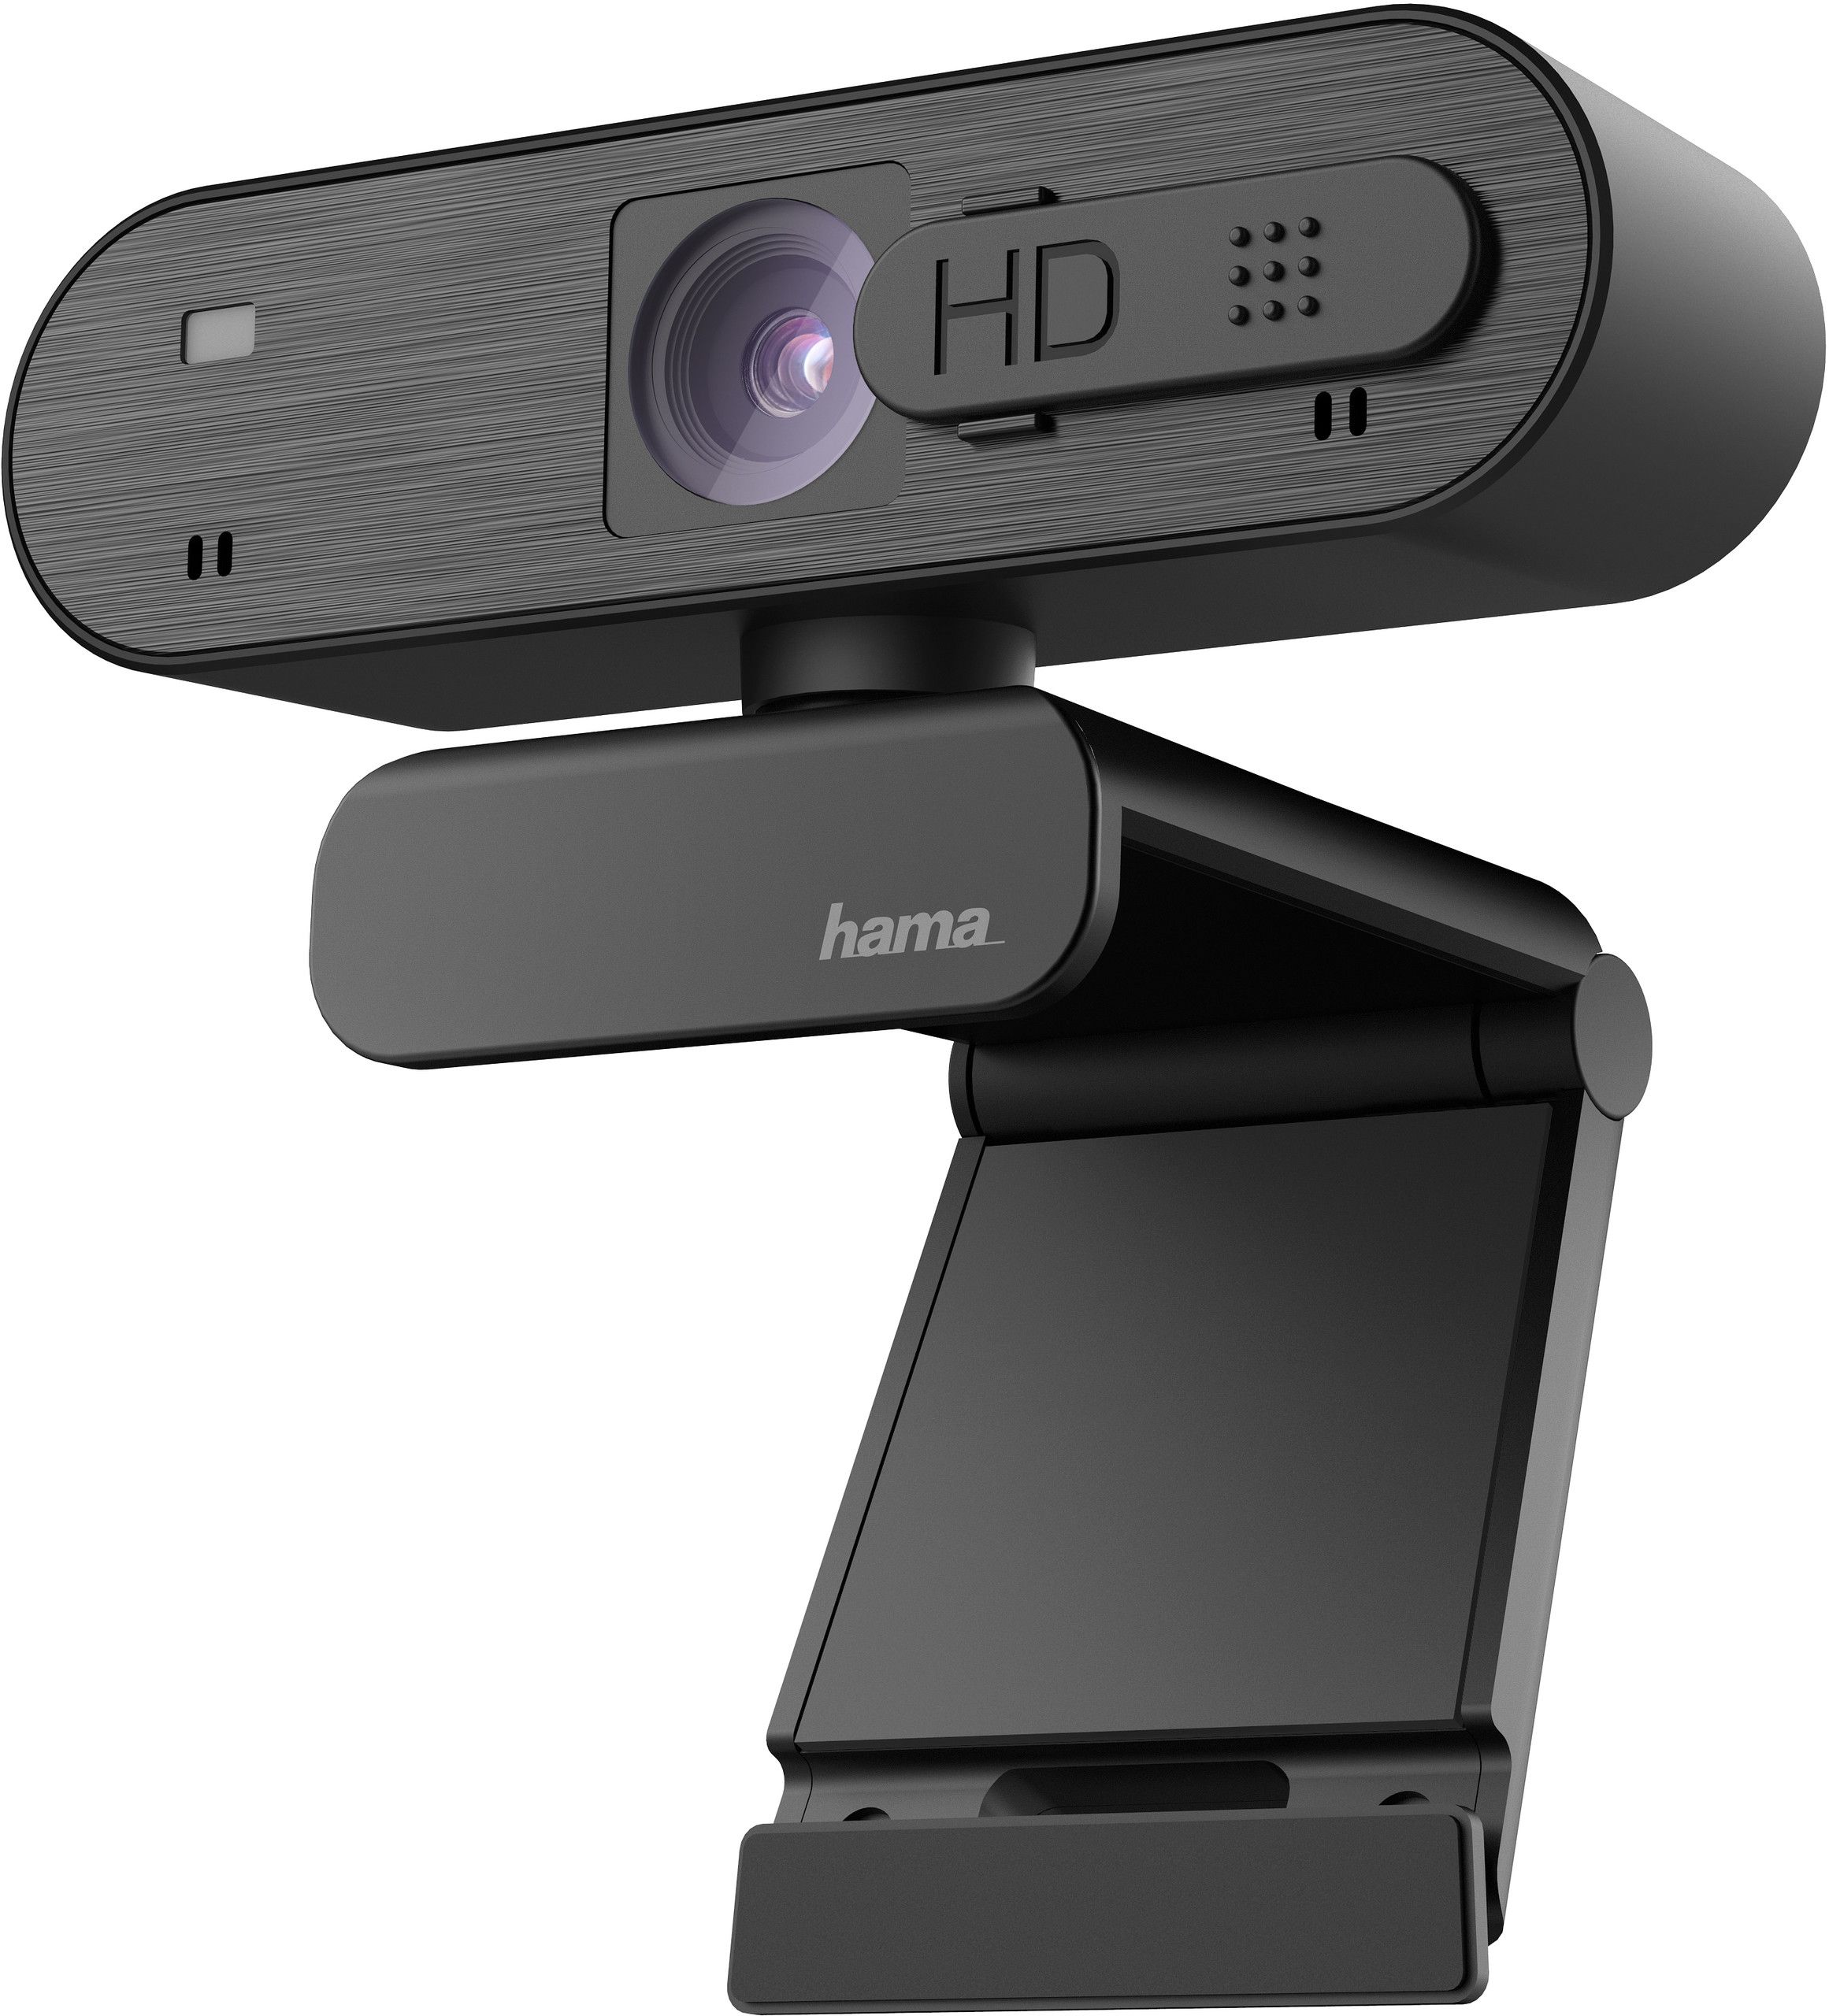 Hama C-600 Pro webkamera